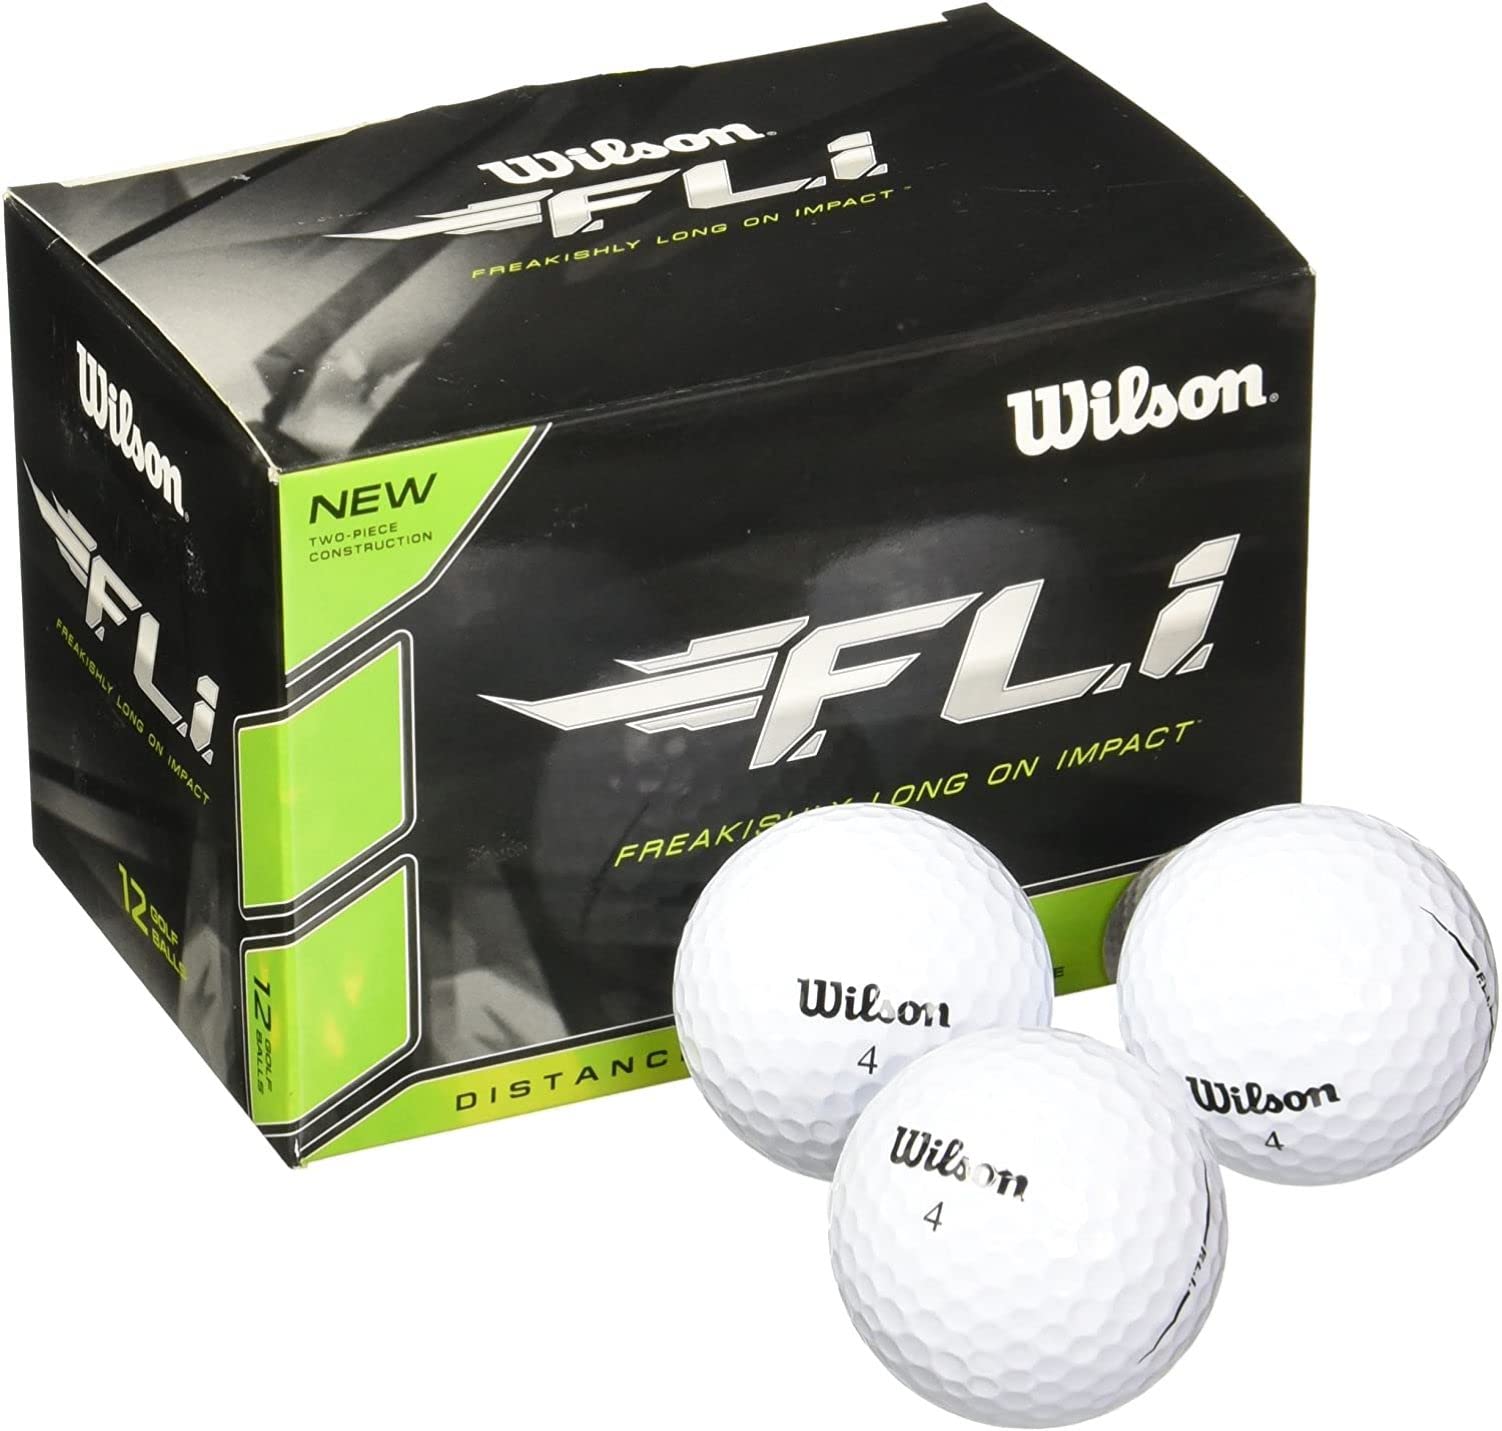 WILSON Staff F.L.I. Golf Balls (Pack of 12)